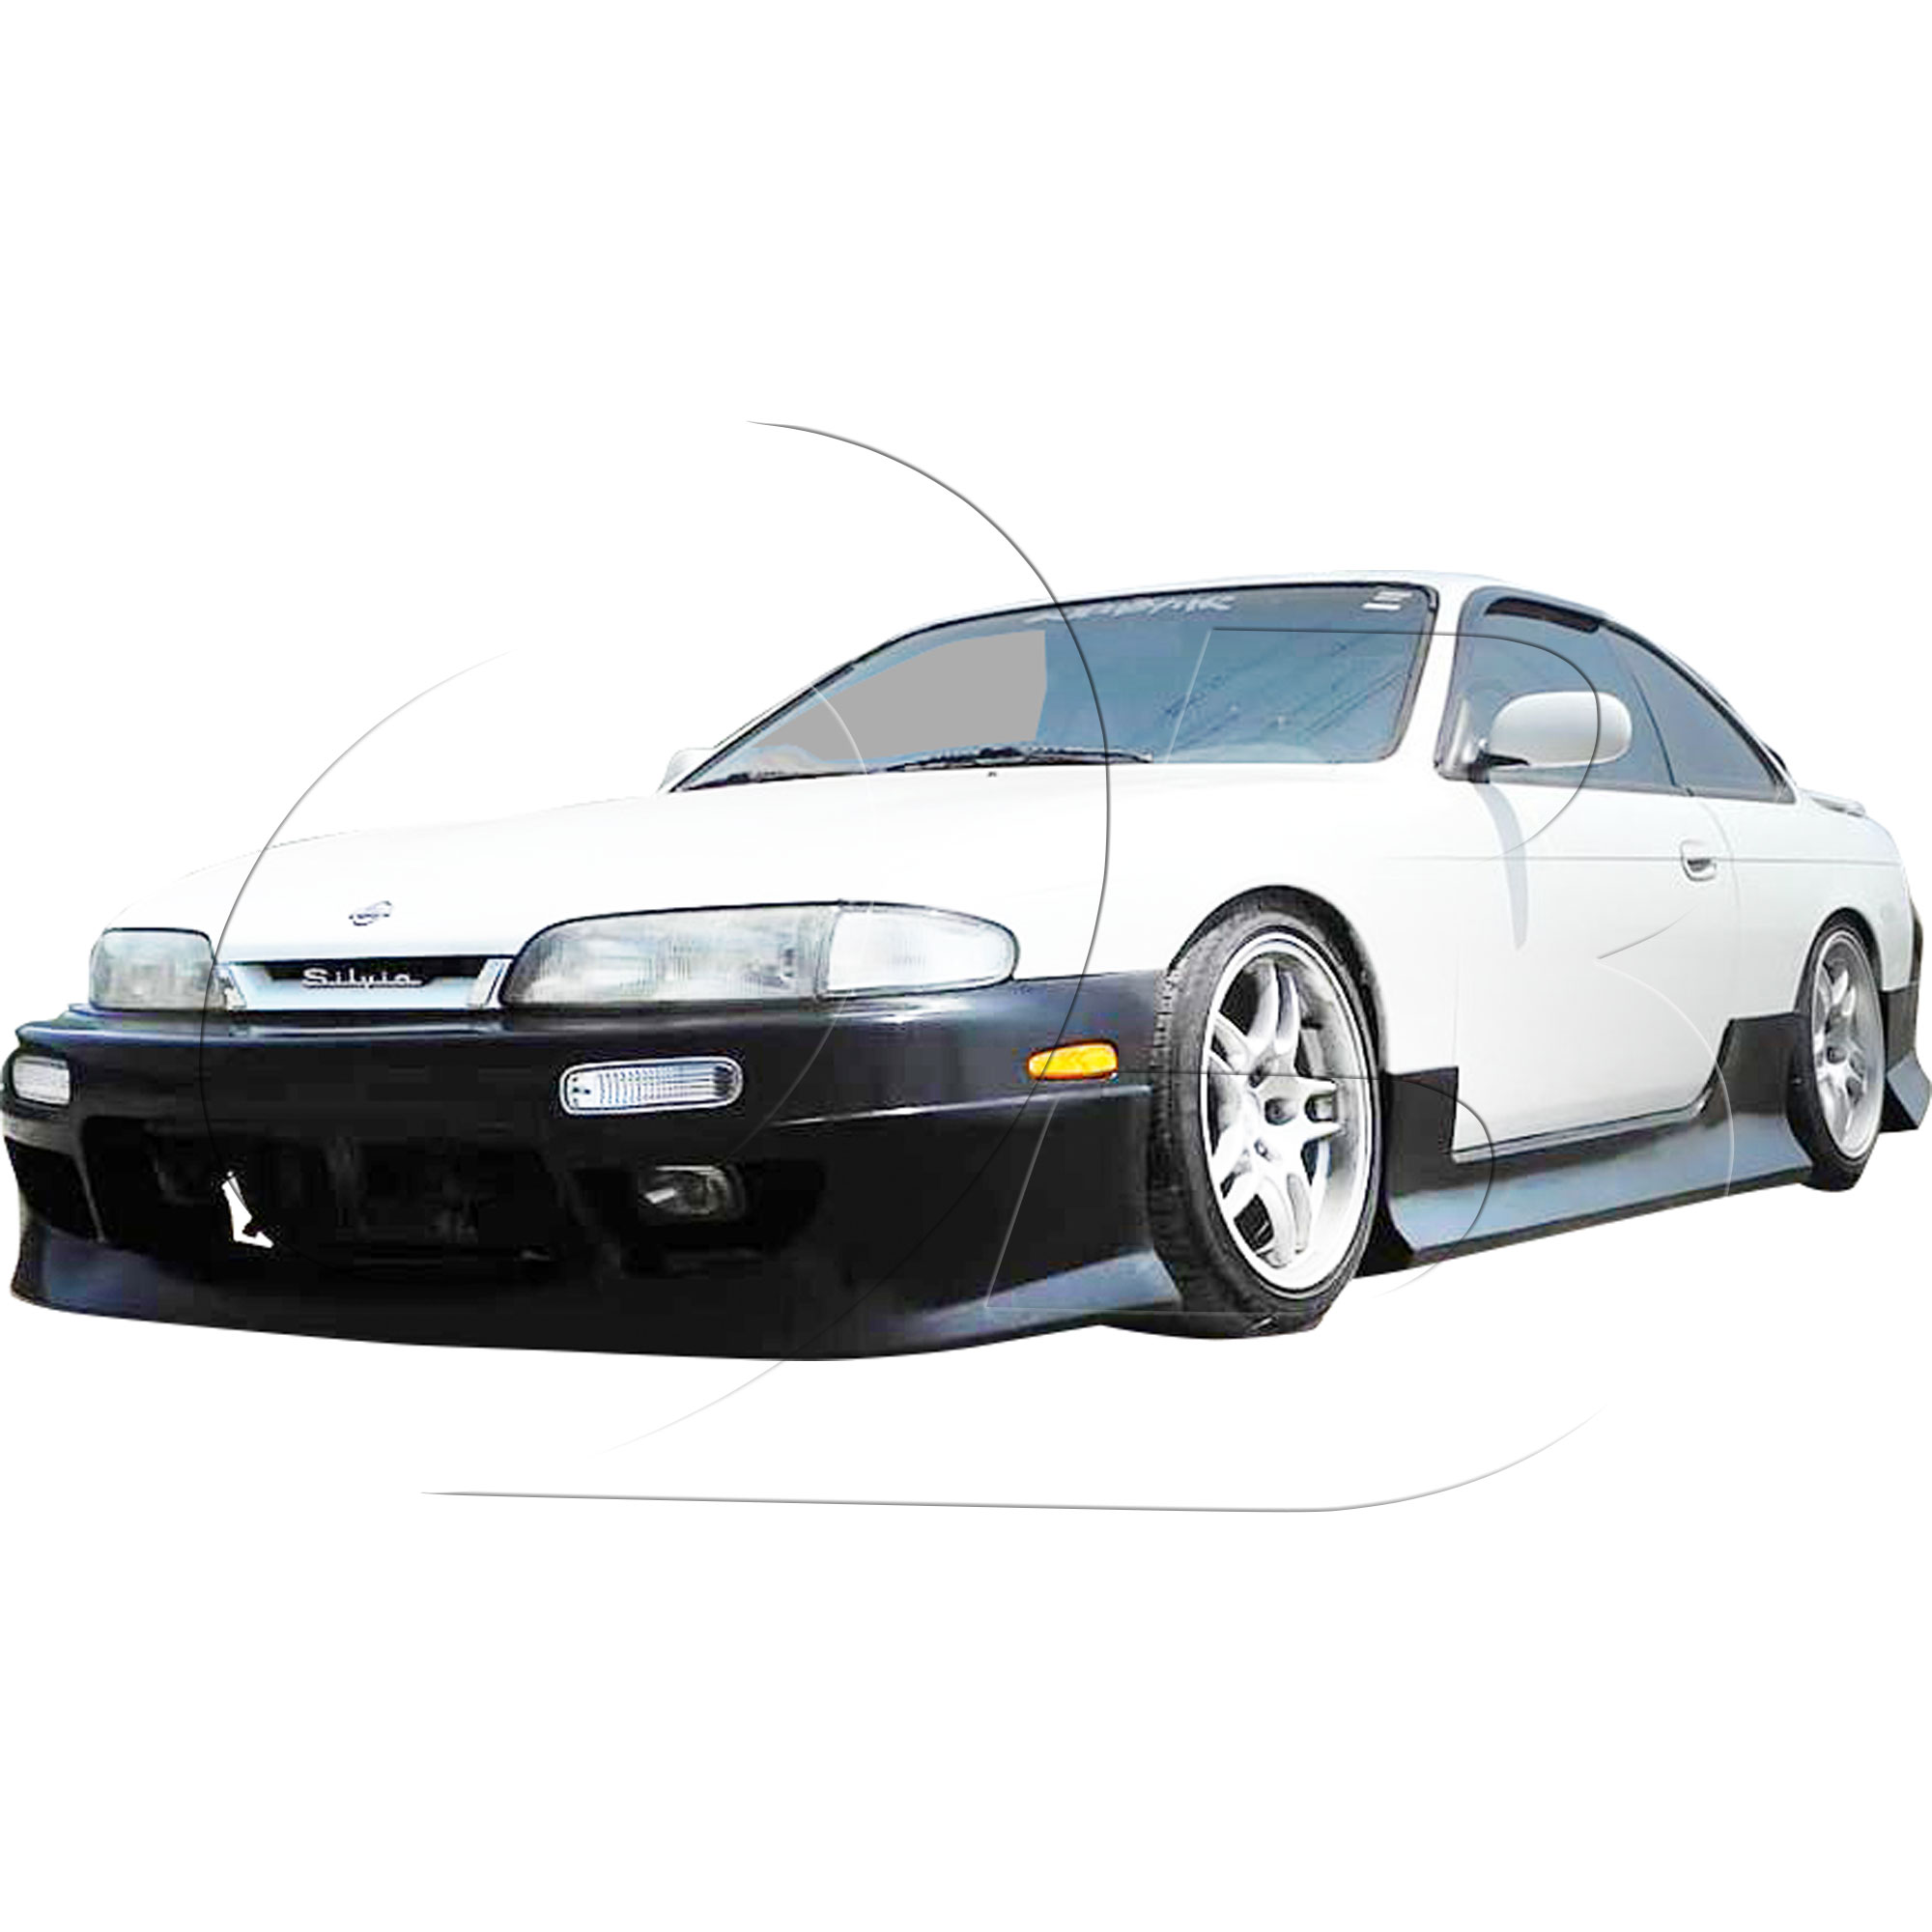 KBD Urethane DM3 Style 1pc Front Bumper > Nissan 240SX S14 1995-1996 - Image 28